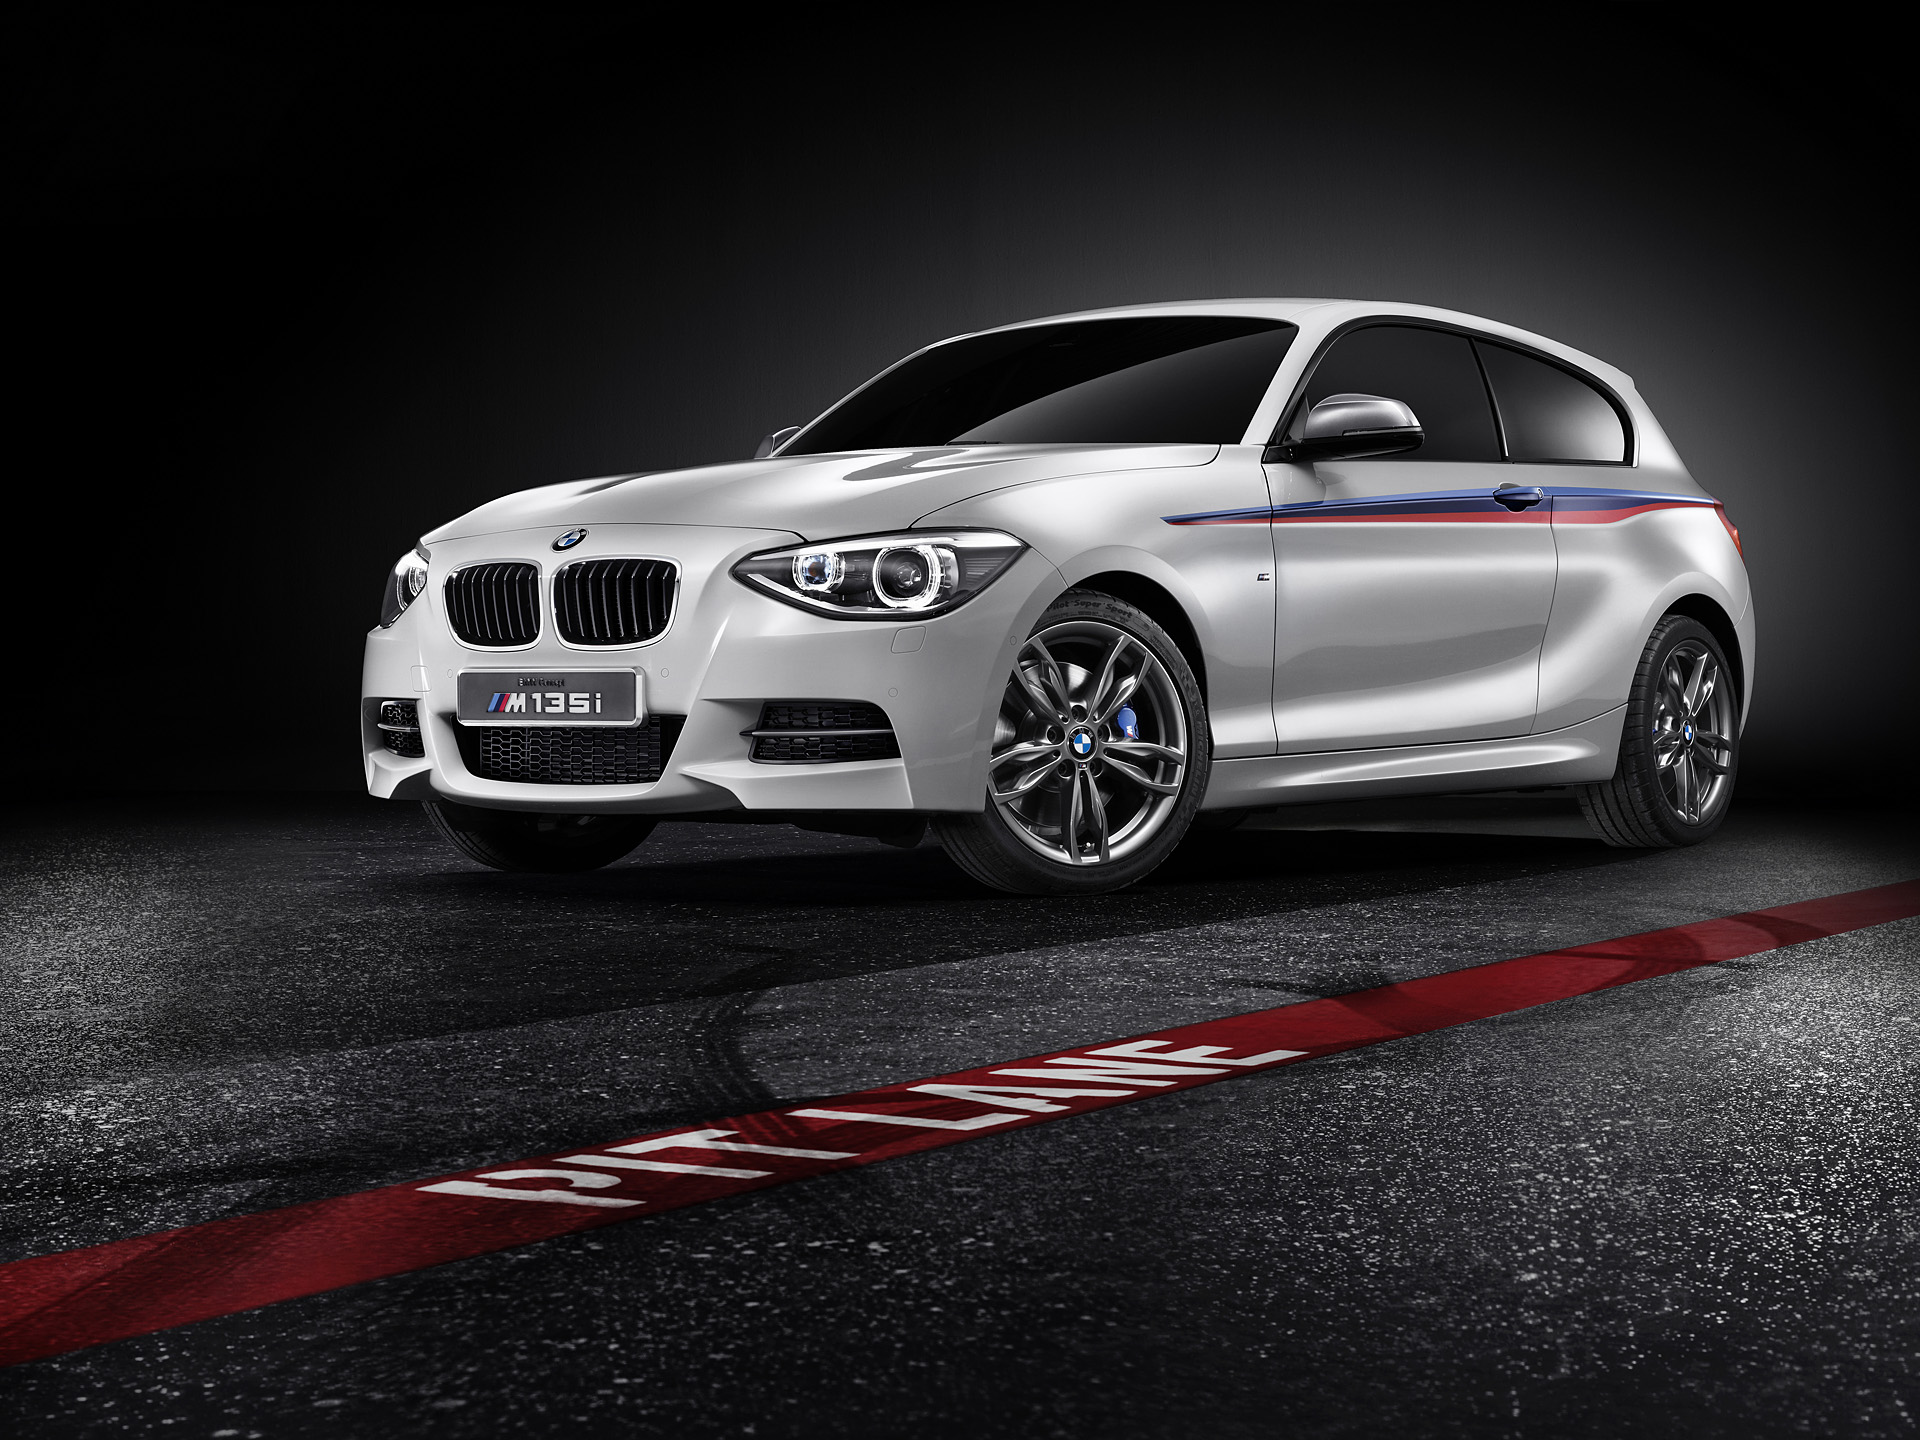  2012 BMW M135i Concept Wallpaper.